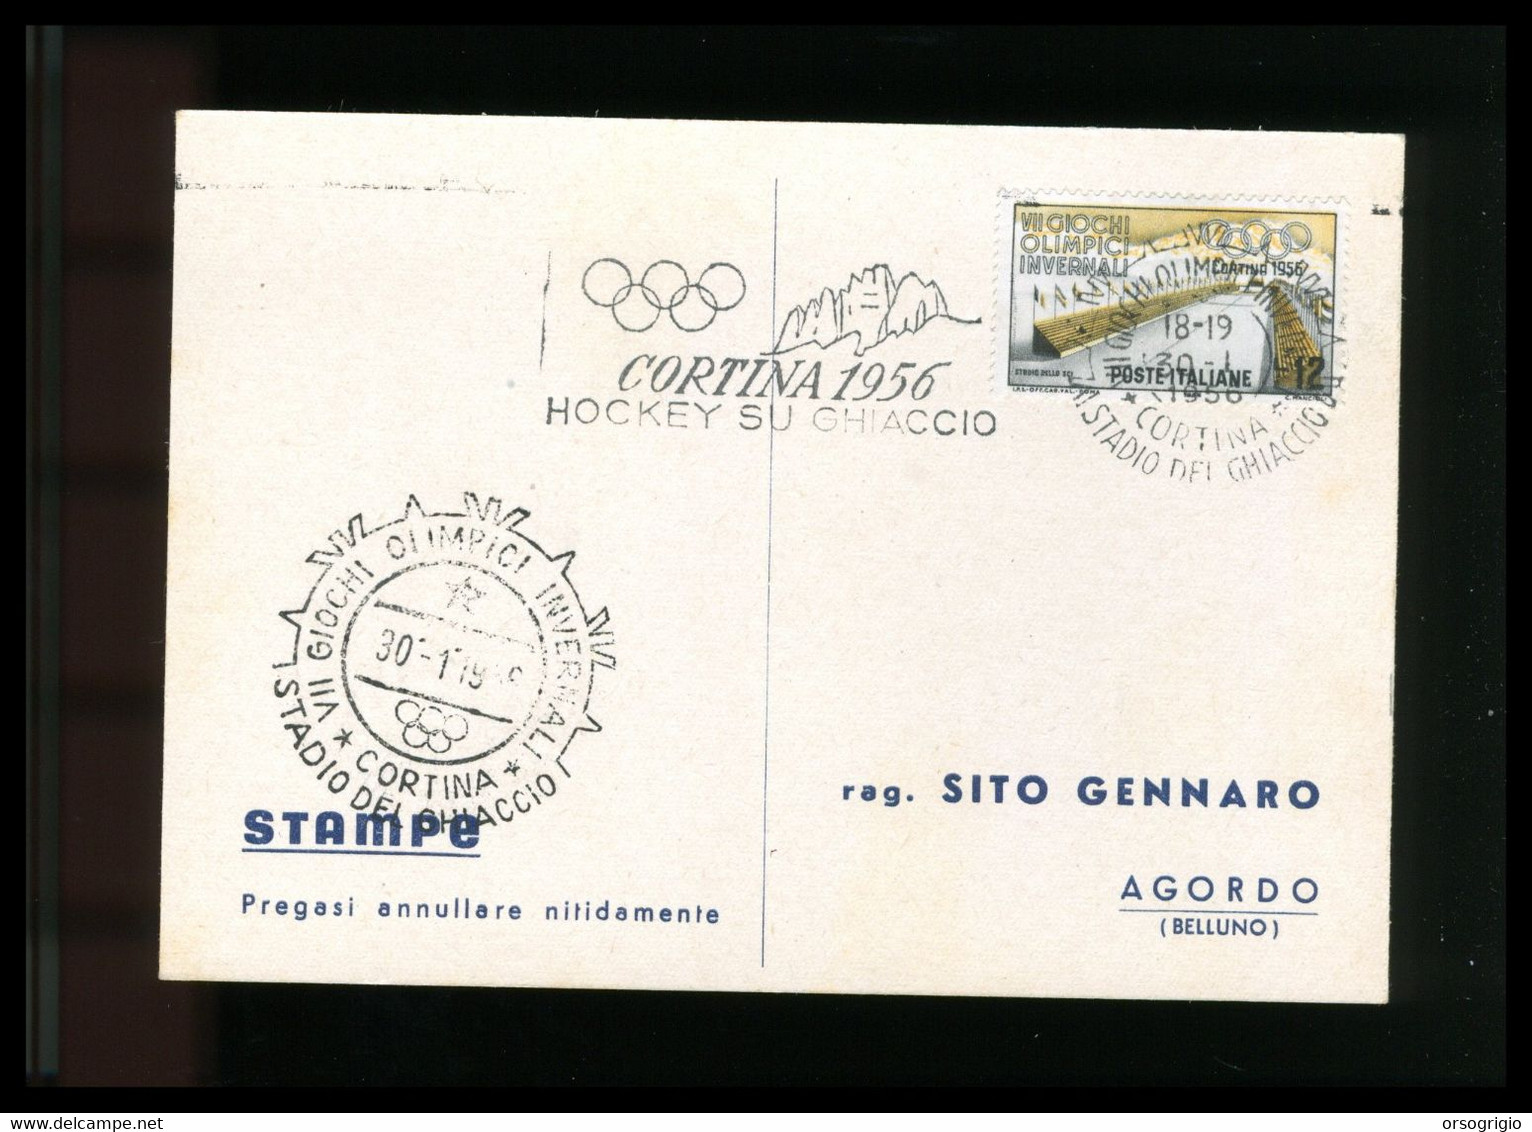 ITALIA - 1956 GIOCHI OLIMPICI INVERNALI Di CORTINA D'AMPEZZO - HOCKEY SU GHIACCIO -  30-1-1956    LUSSO - Inverno1956: Cortina D'Ampezzo